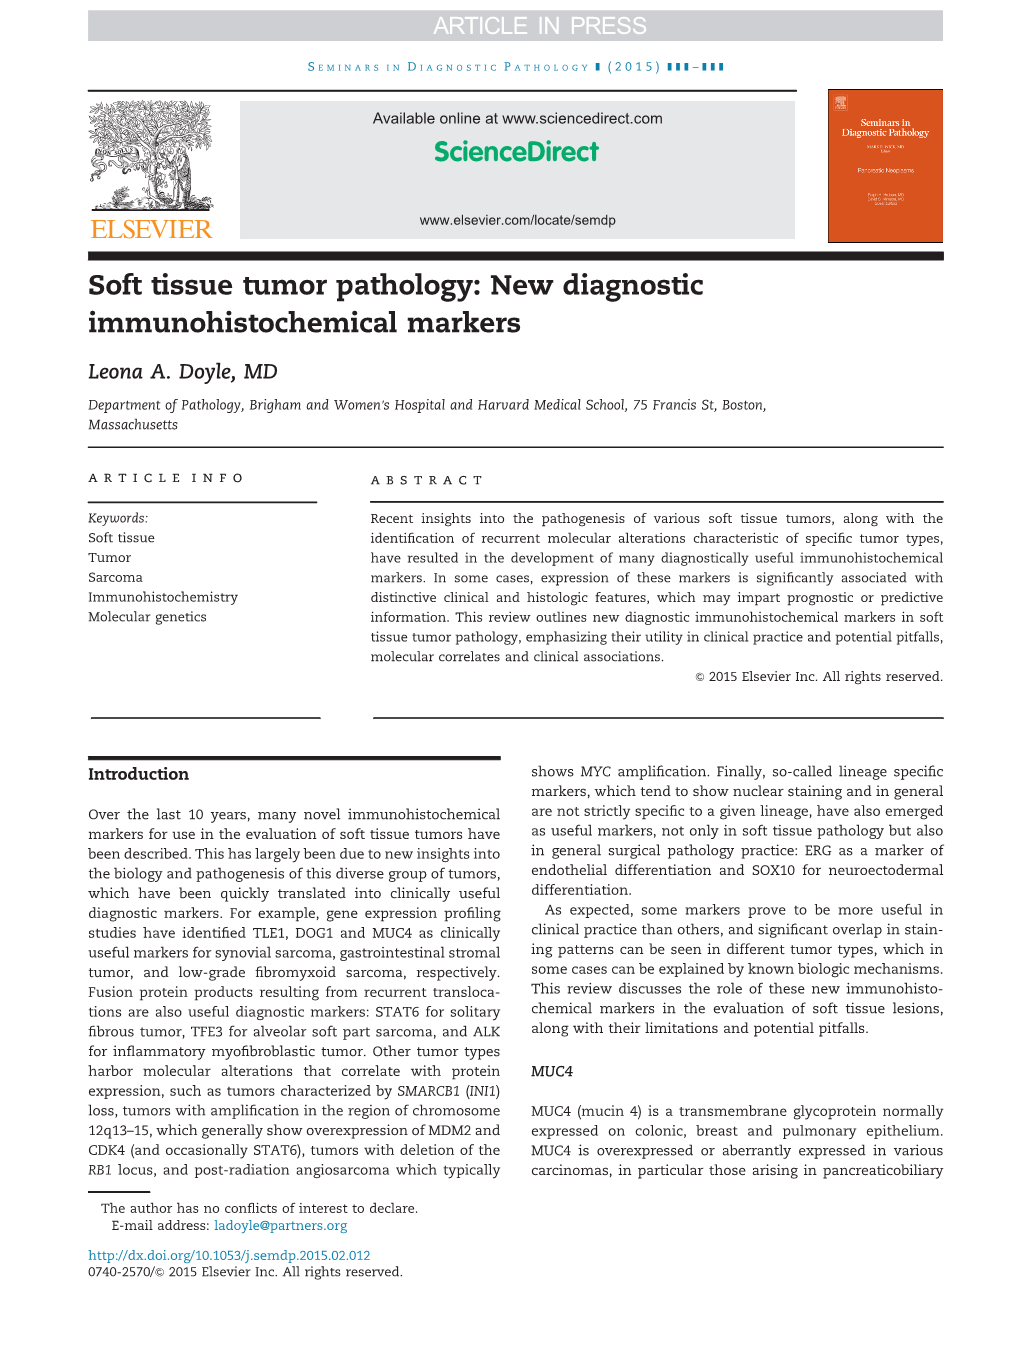 Soft Tissue Tumor Pathology: New Diagnostic Immunohistochemical Markers Leona A